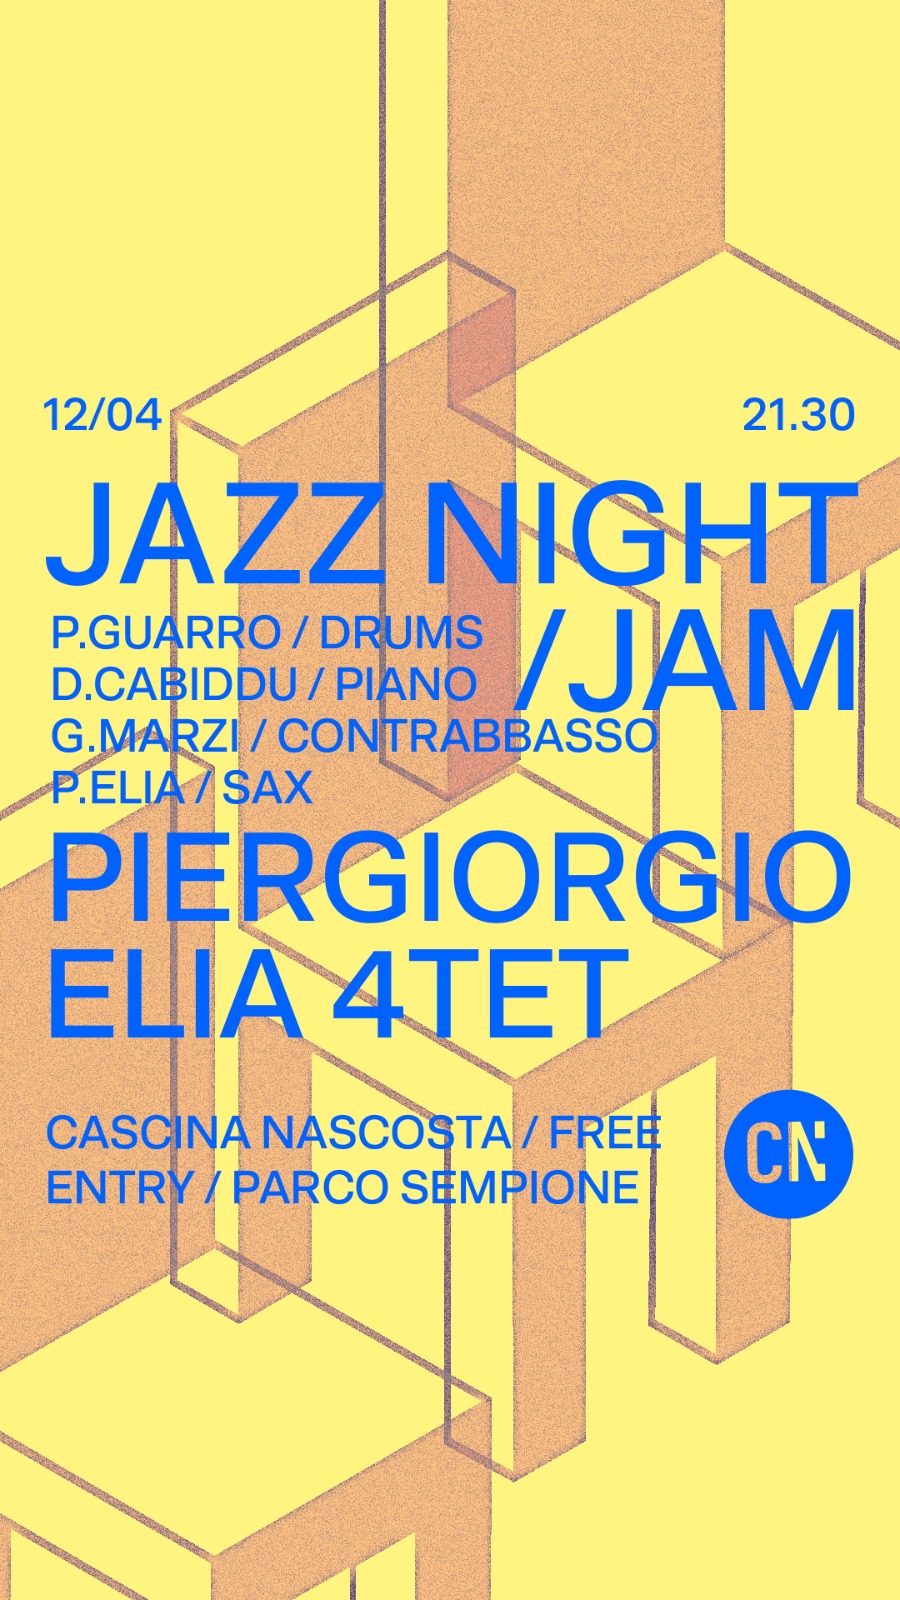 Jazz Night + Jam session